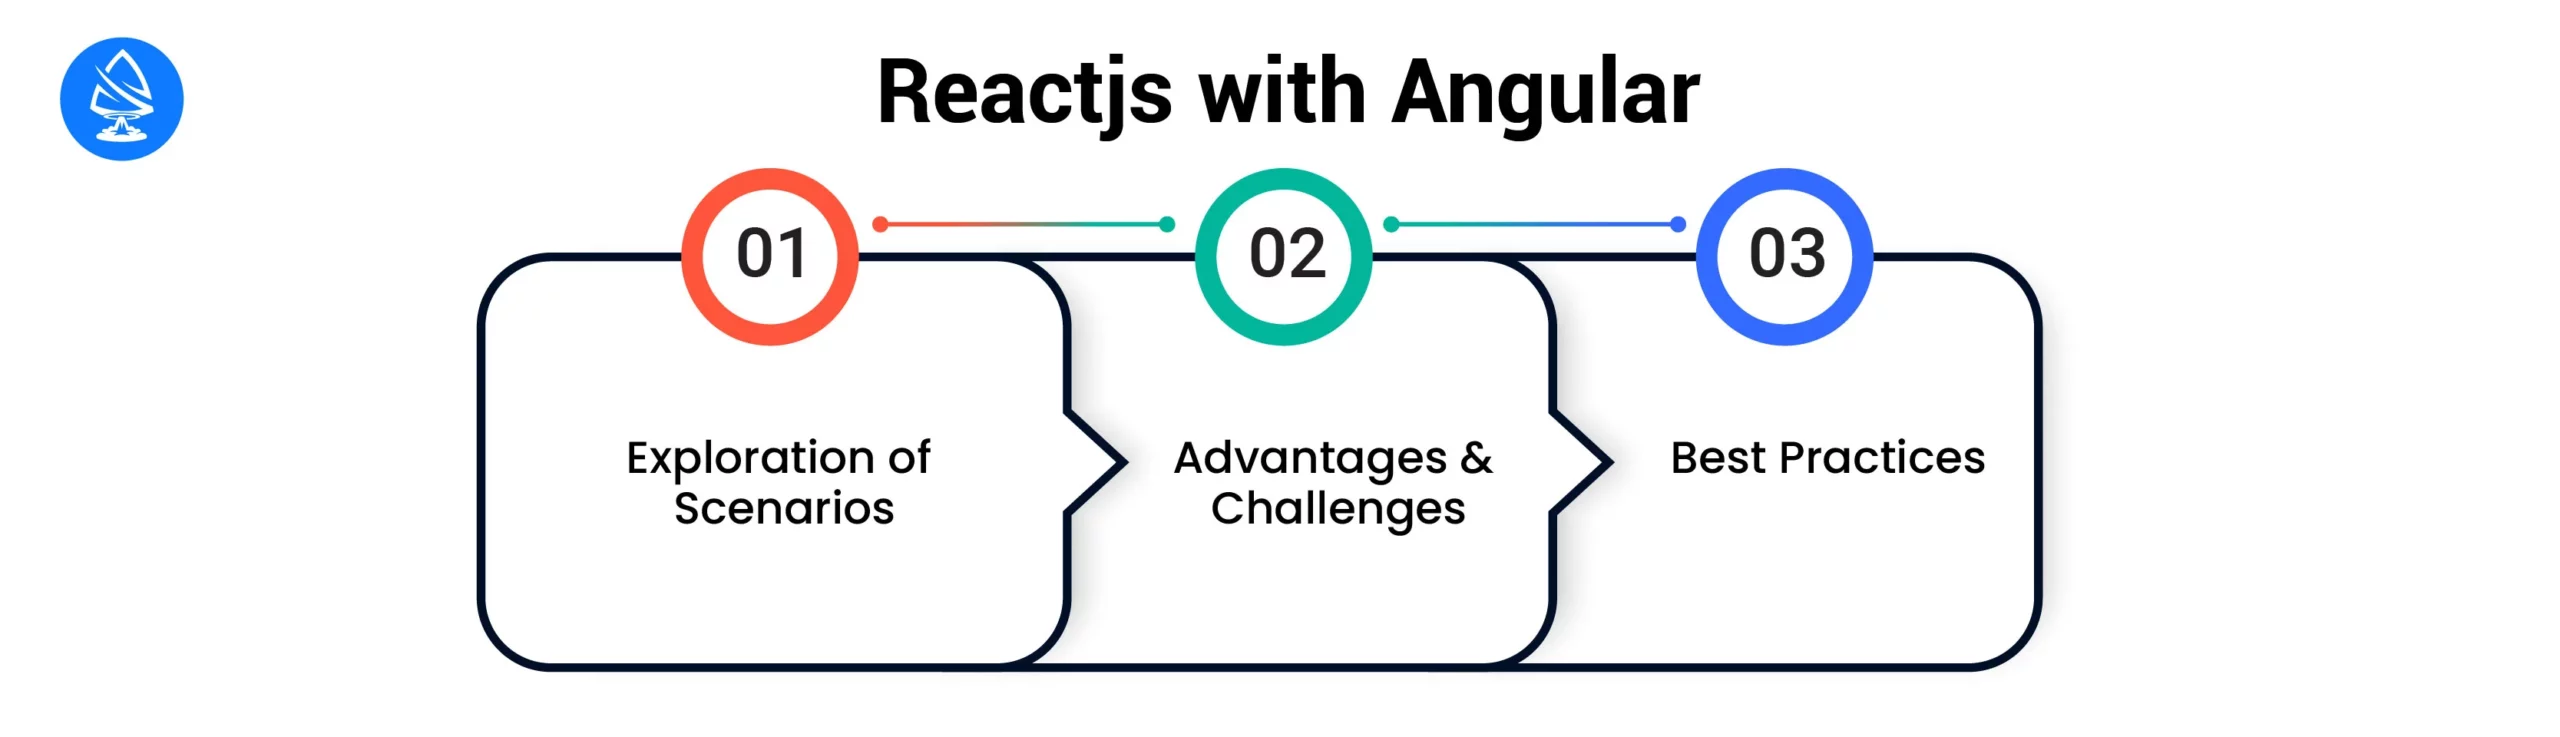 React JS with Angular